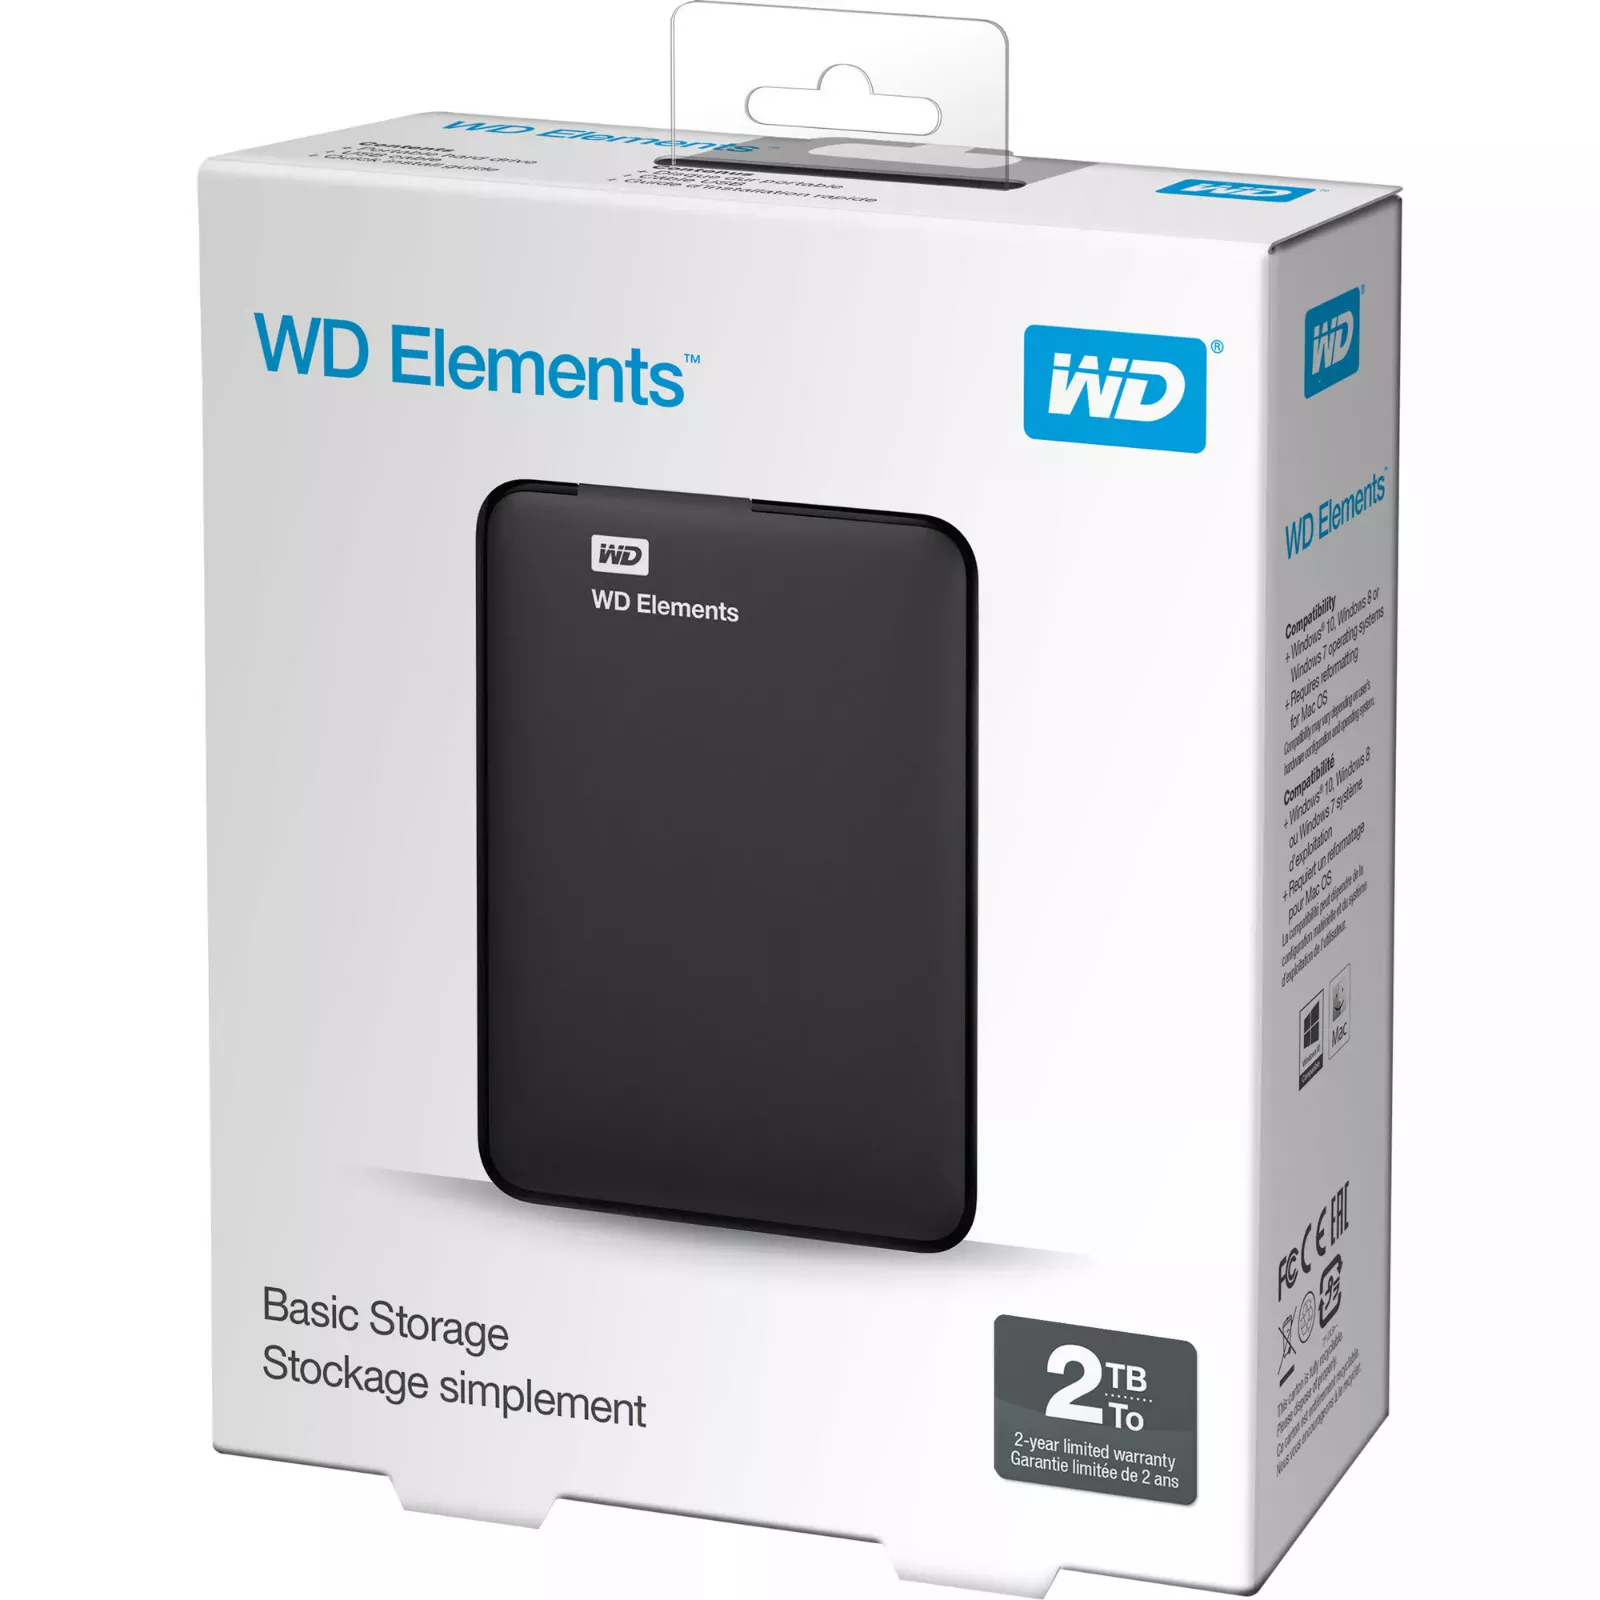 ¡Oferta! WD ELEMENTS 2TB EXTERNO USB 3.0 WDBU6Y0020BBK-NES